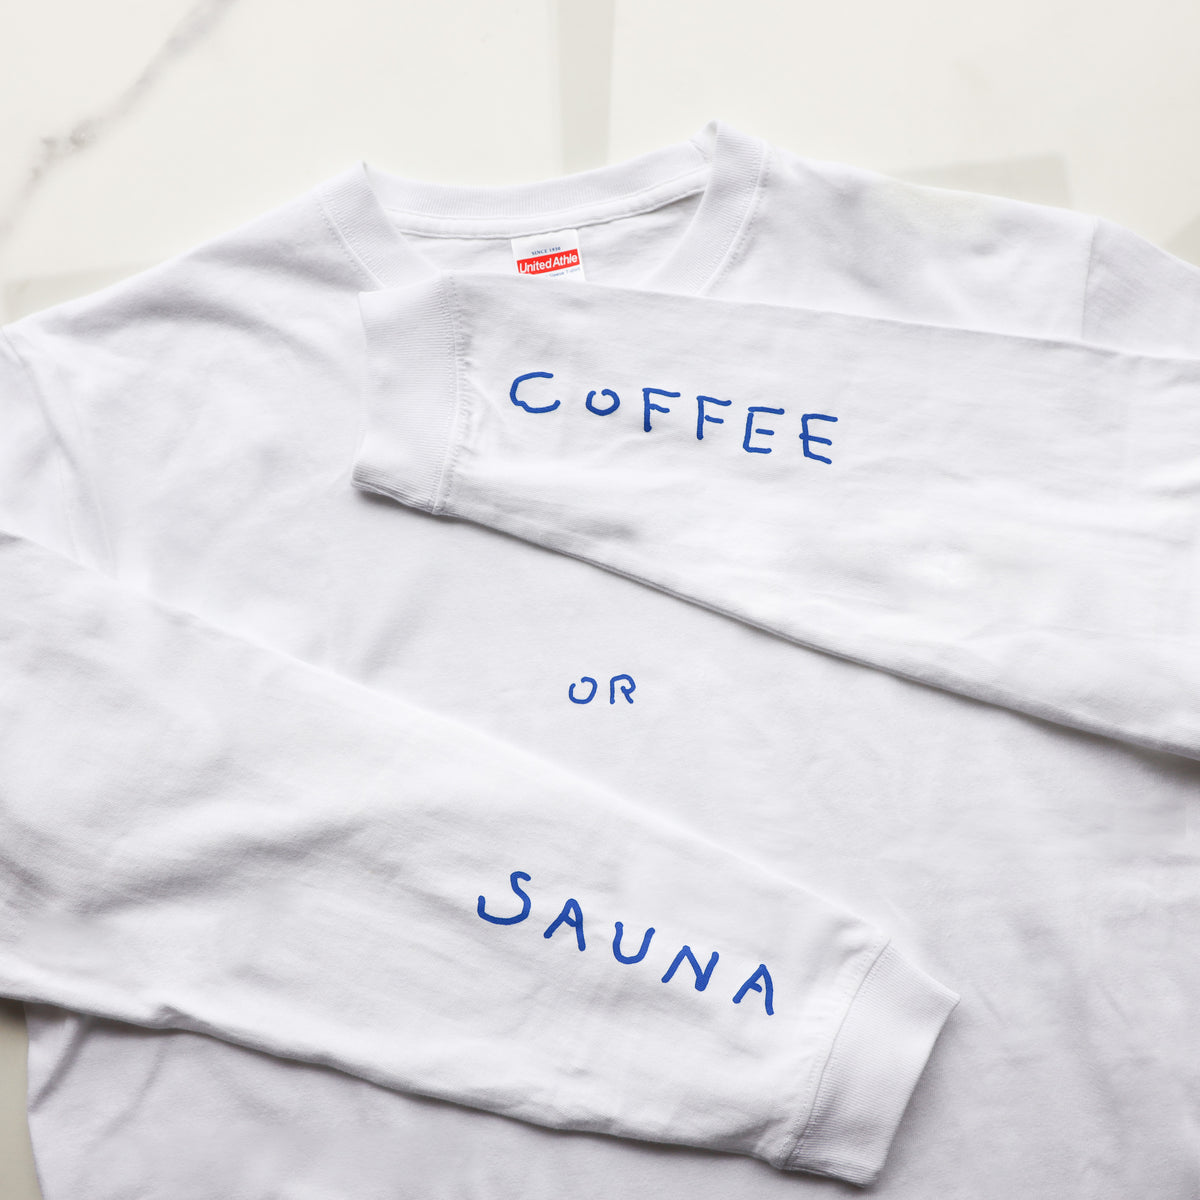 コーヒーサウナーズ ロングスリーブTシャツ 「COFFEE or SAUNA」 2022 A/W collection